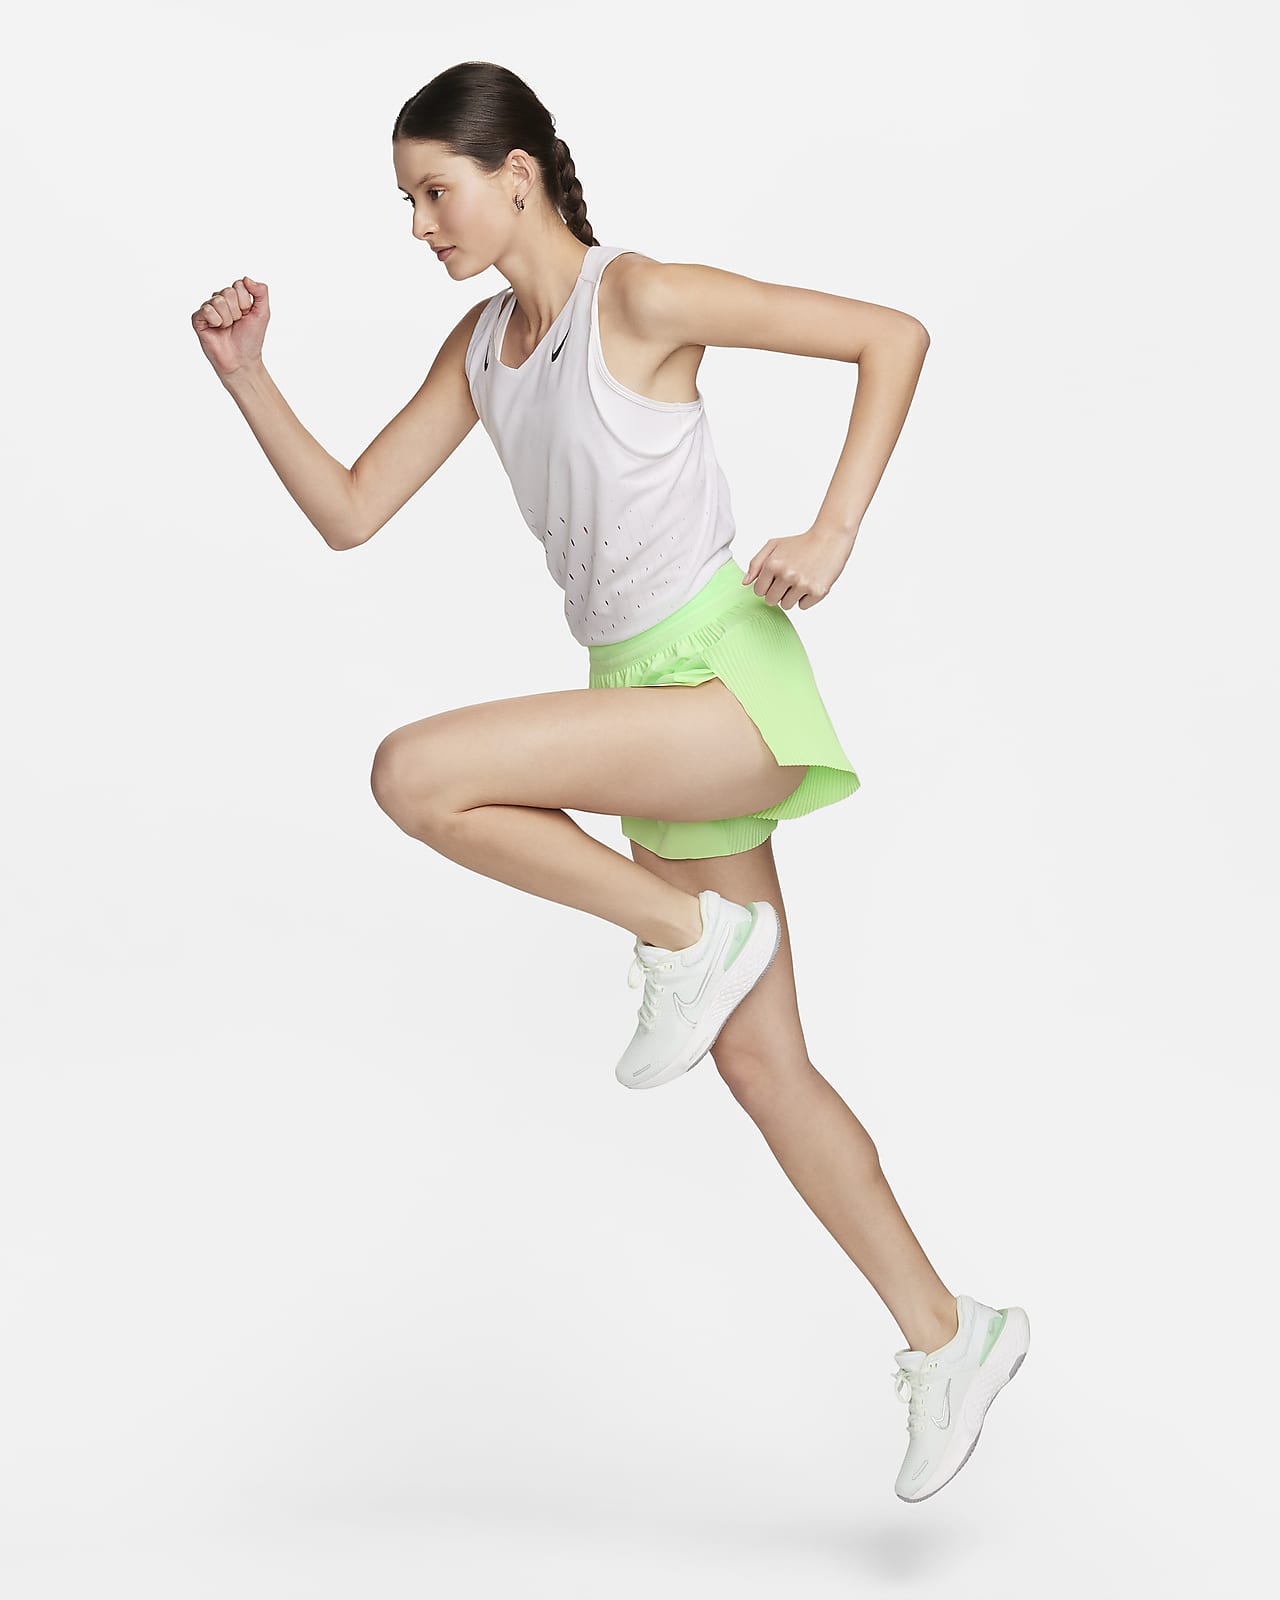 Nike Women's AeroSwift Tight Running Shorts, Size: Medium, Black